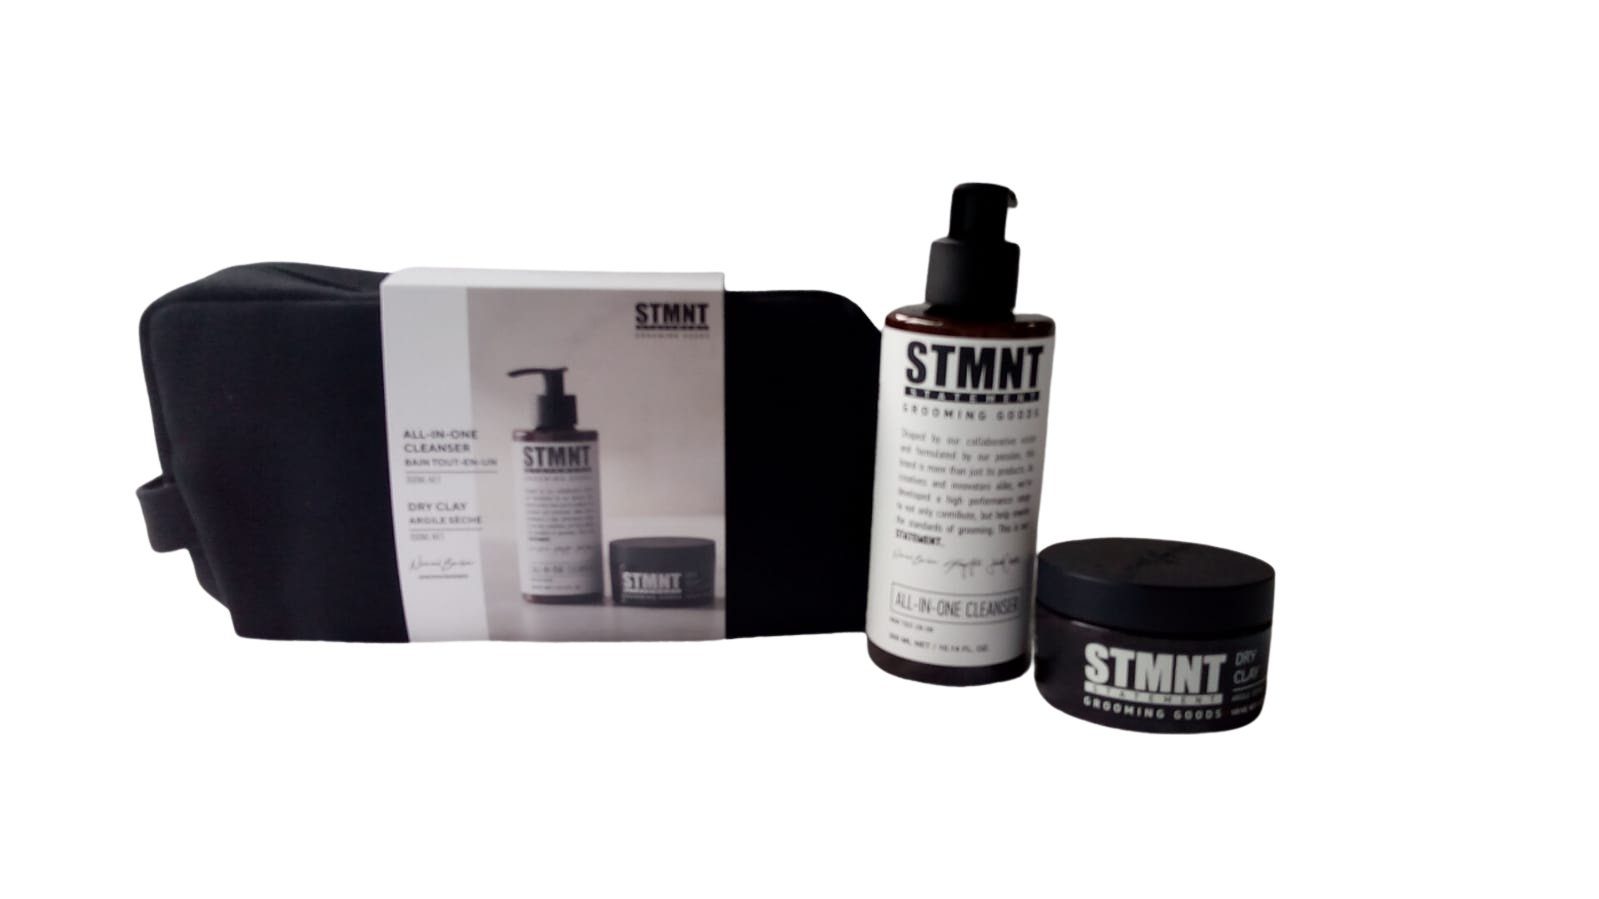 Schwarzkopf Haarpflege-Set STMNT Nomad Geschenkset, Set, 2-tlg., All-In-One Cleanser 300 ml + Dry Clay 100 ml, für Haare und Körper